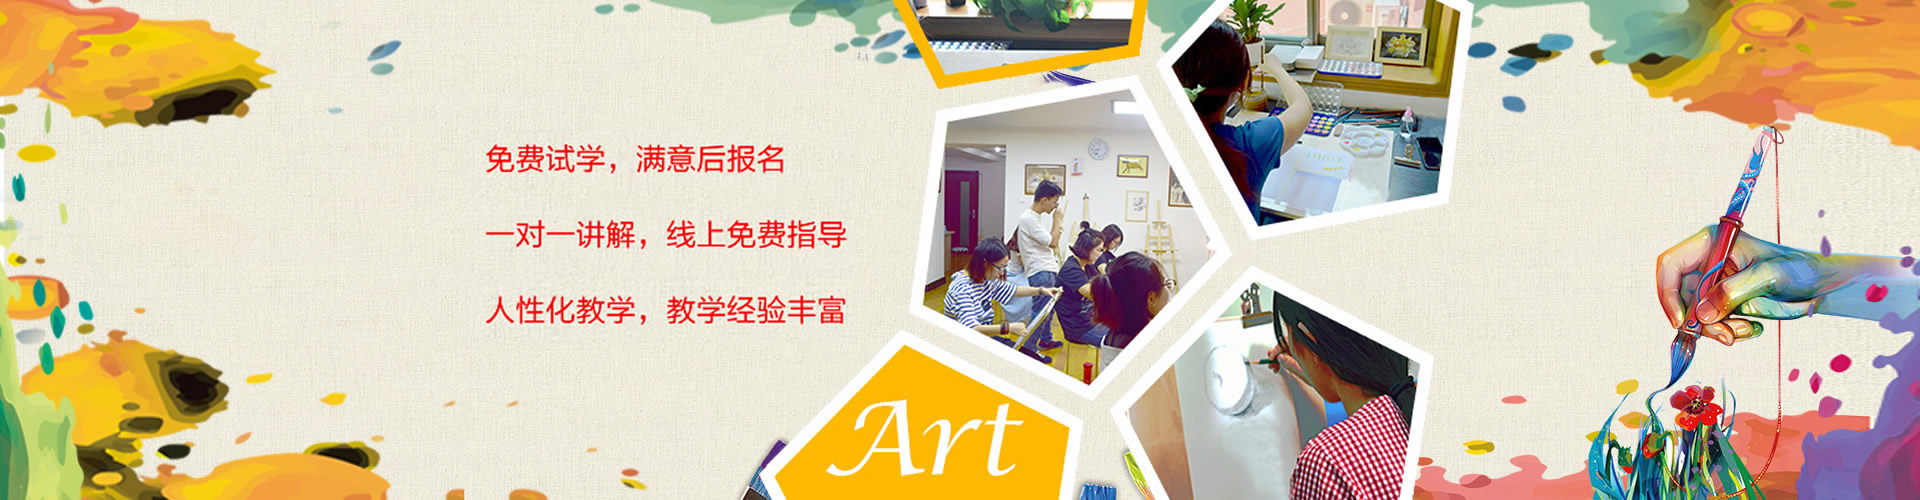 北京和风林艺术成人美术培训